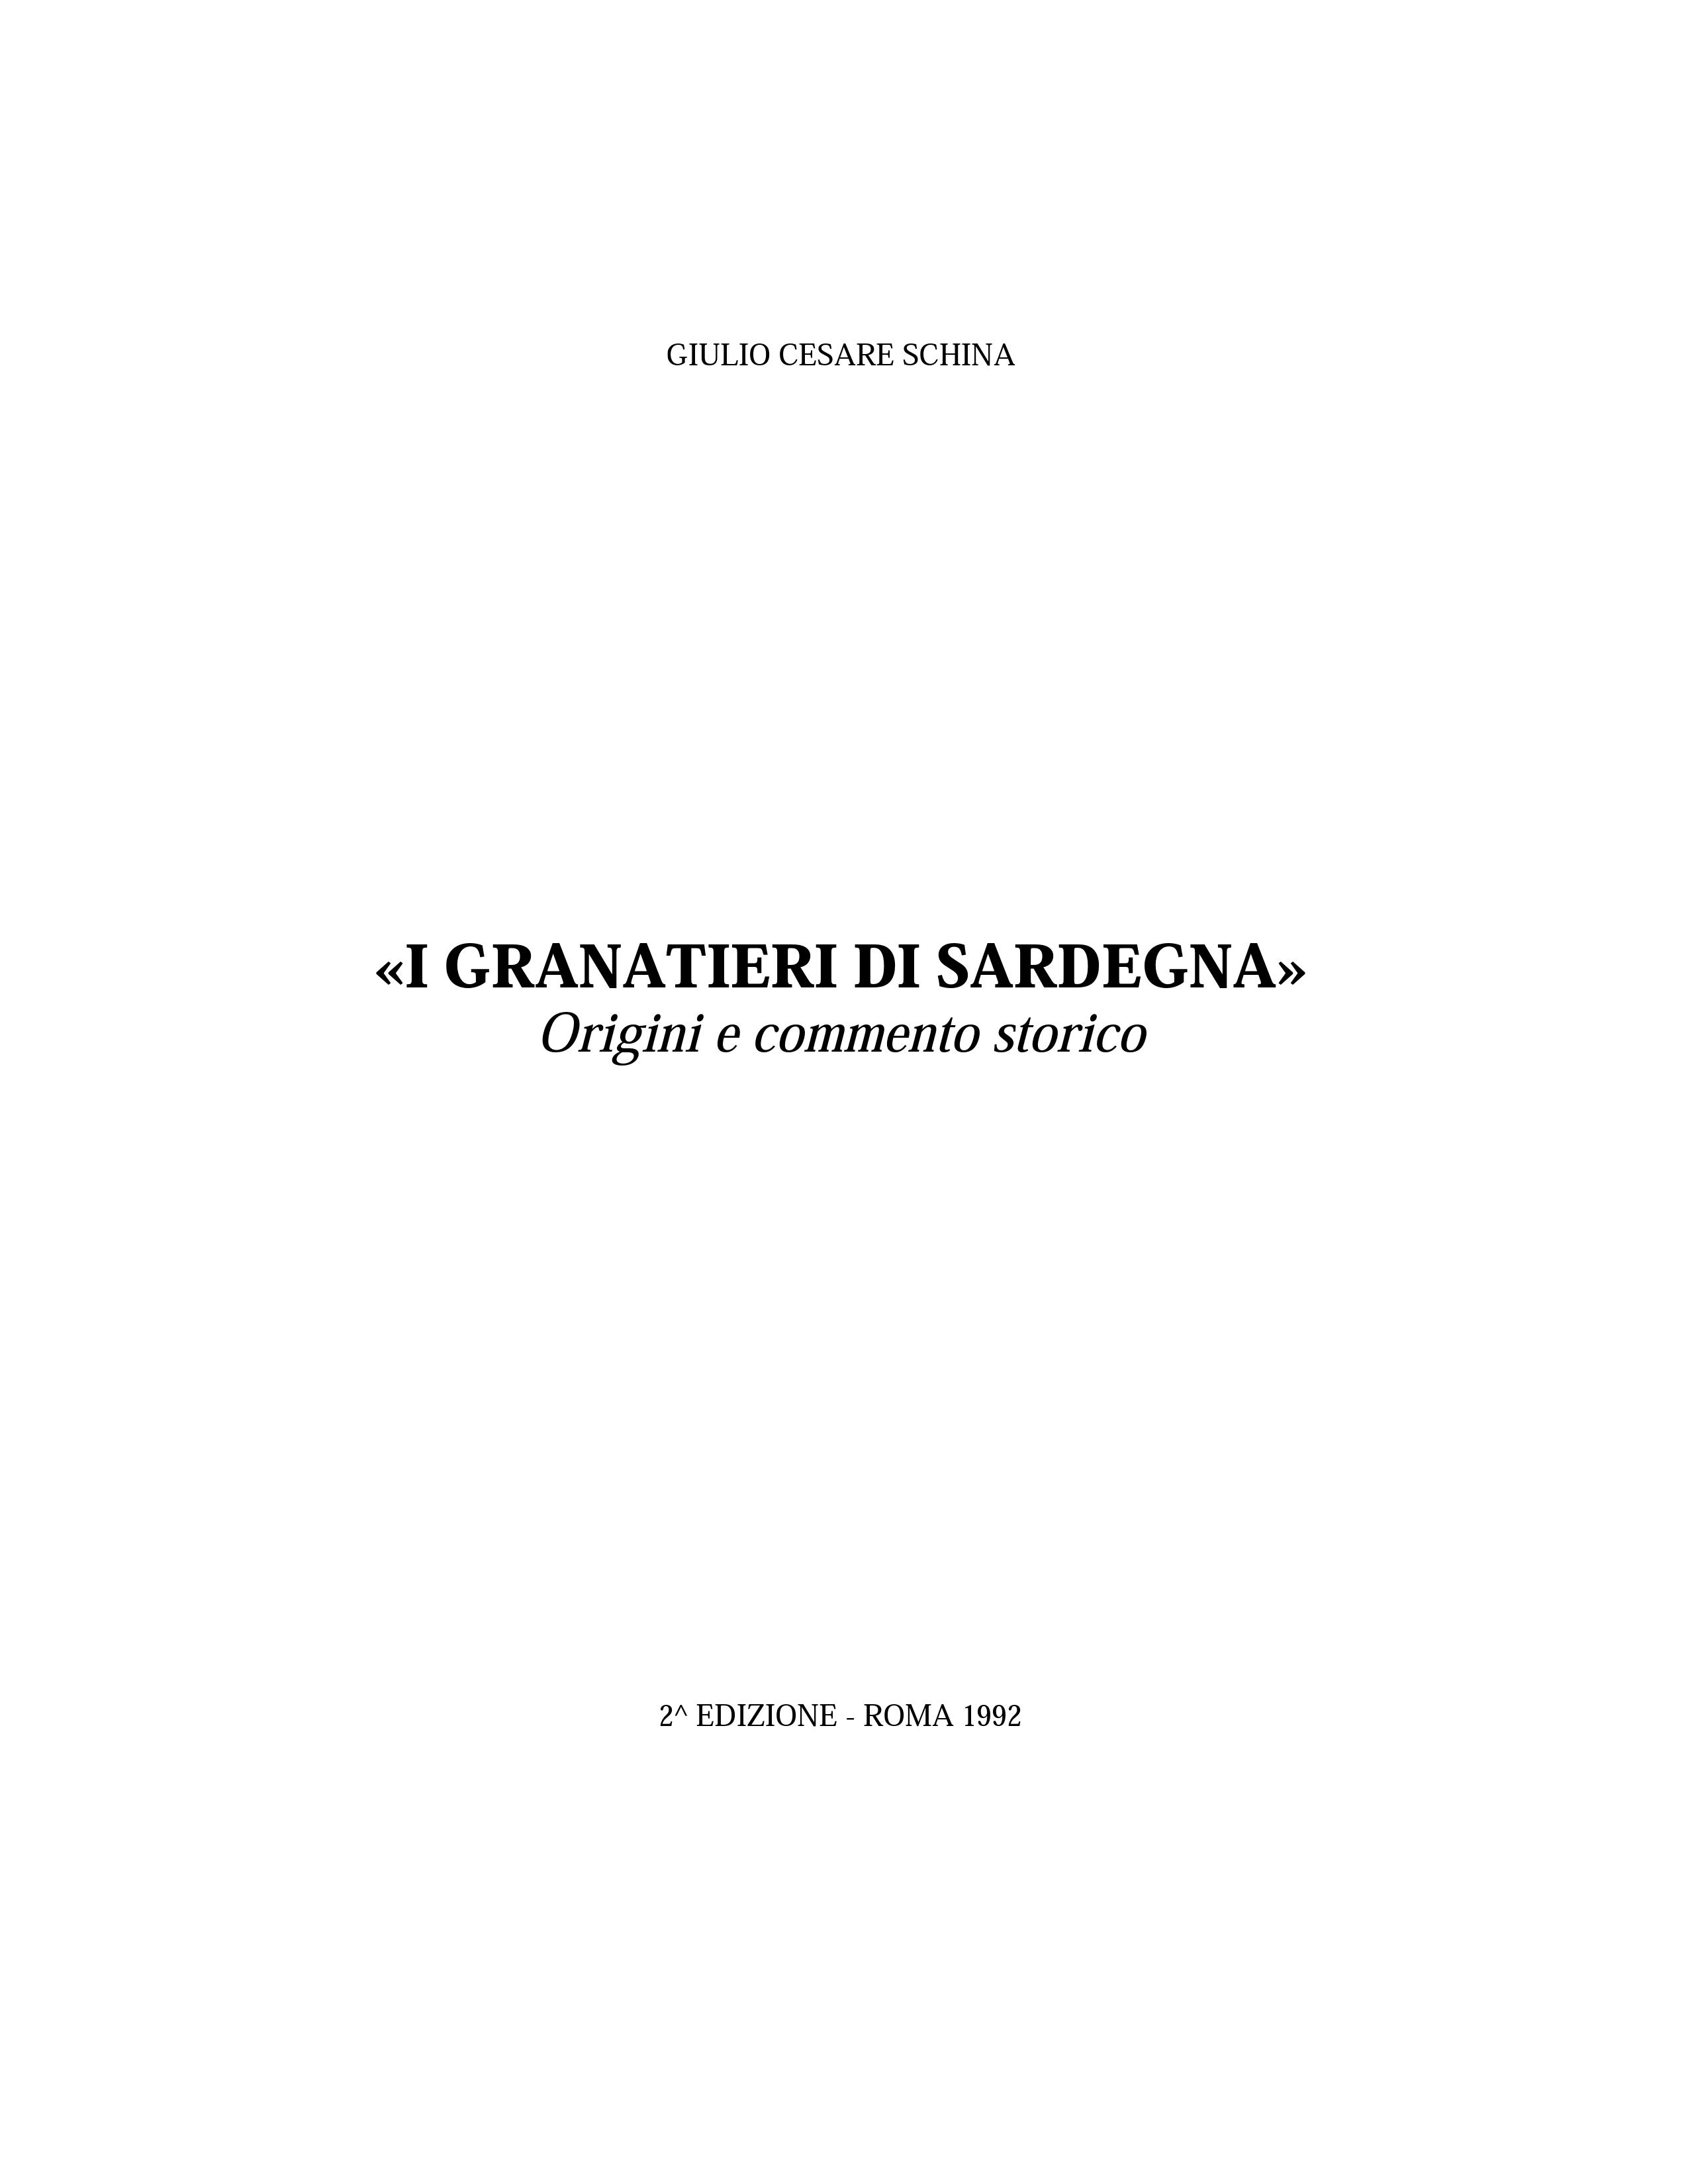 I Granatieri di Sardegna - Origini e commento storico